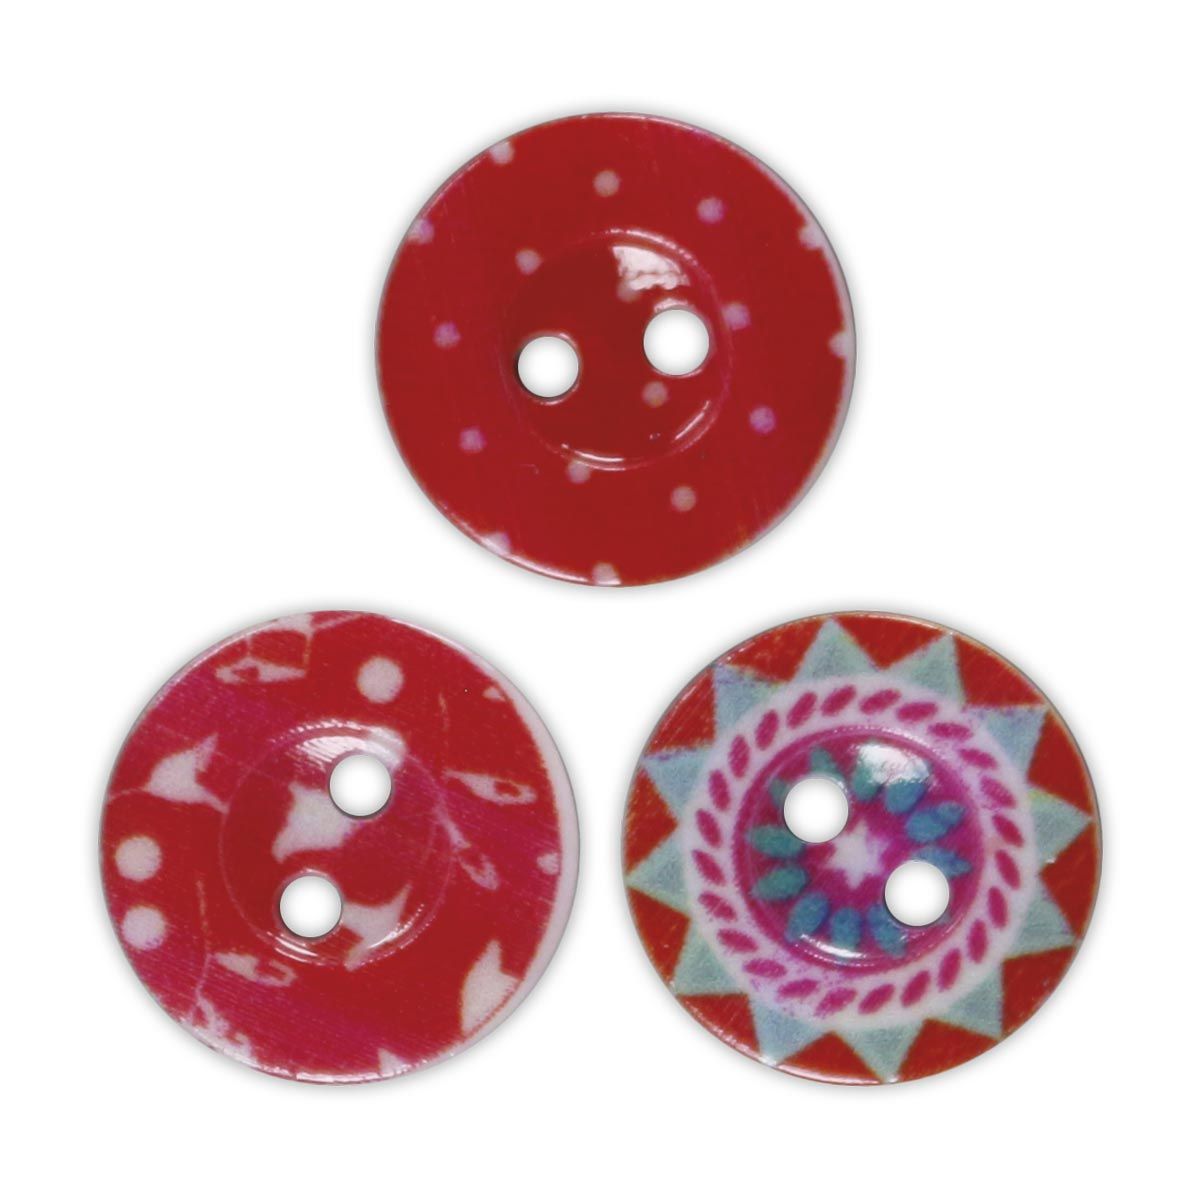 Guziki Titanum Craft-Fun Series plastikowe okrągłe 15mm czerwony 30 szt (191086)